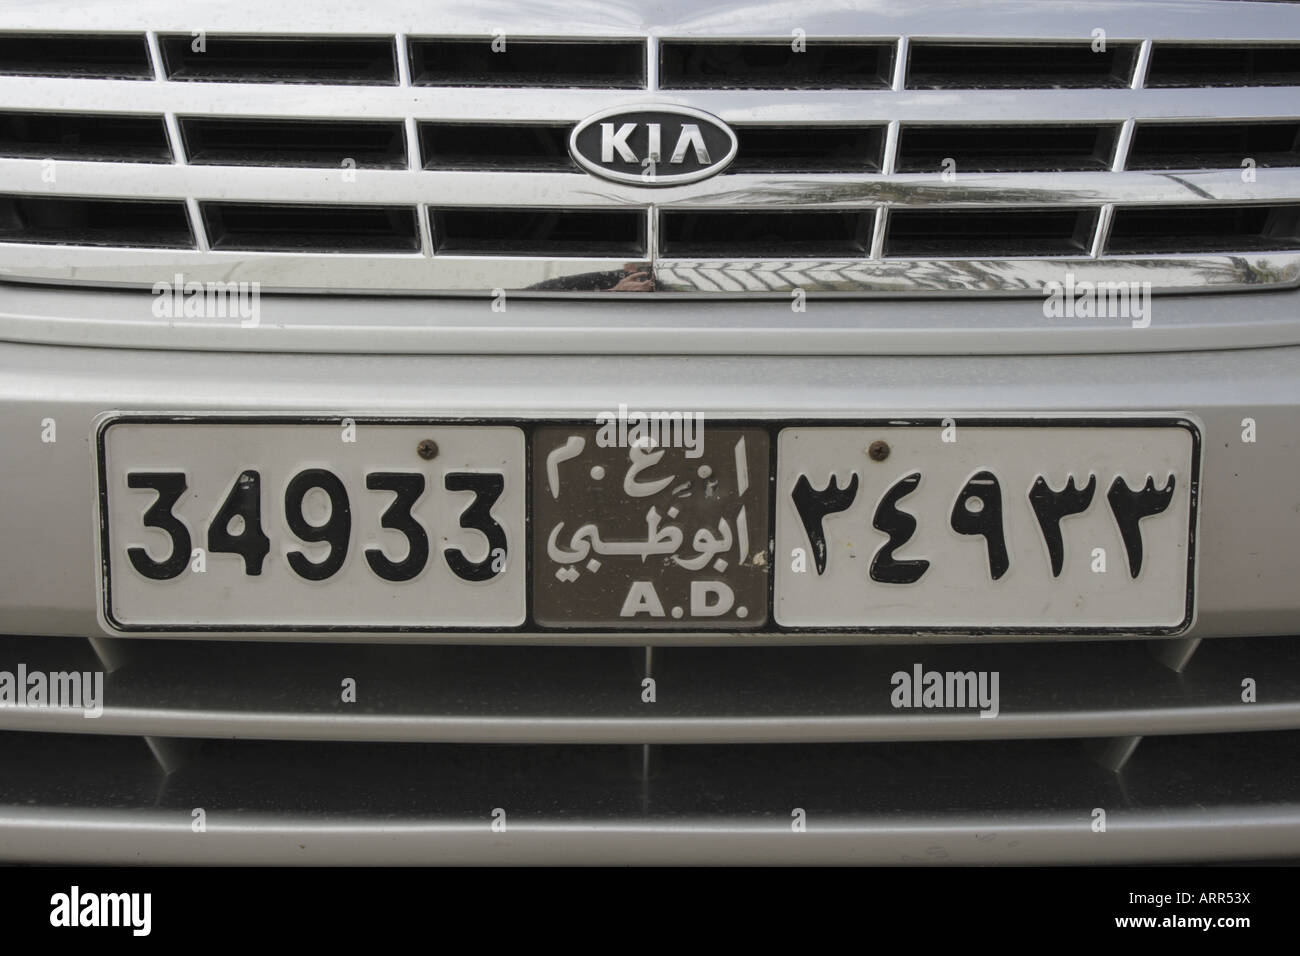 Licenza auto di una piastra di una Kia auto di Abu Dhabi, visto in Dubai Emirati Arabi Uniti. Foto di Willy Matheisl Foto Stock